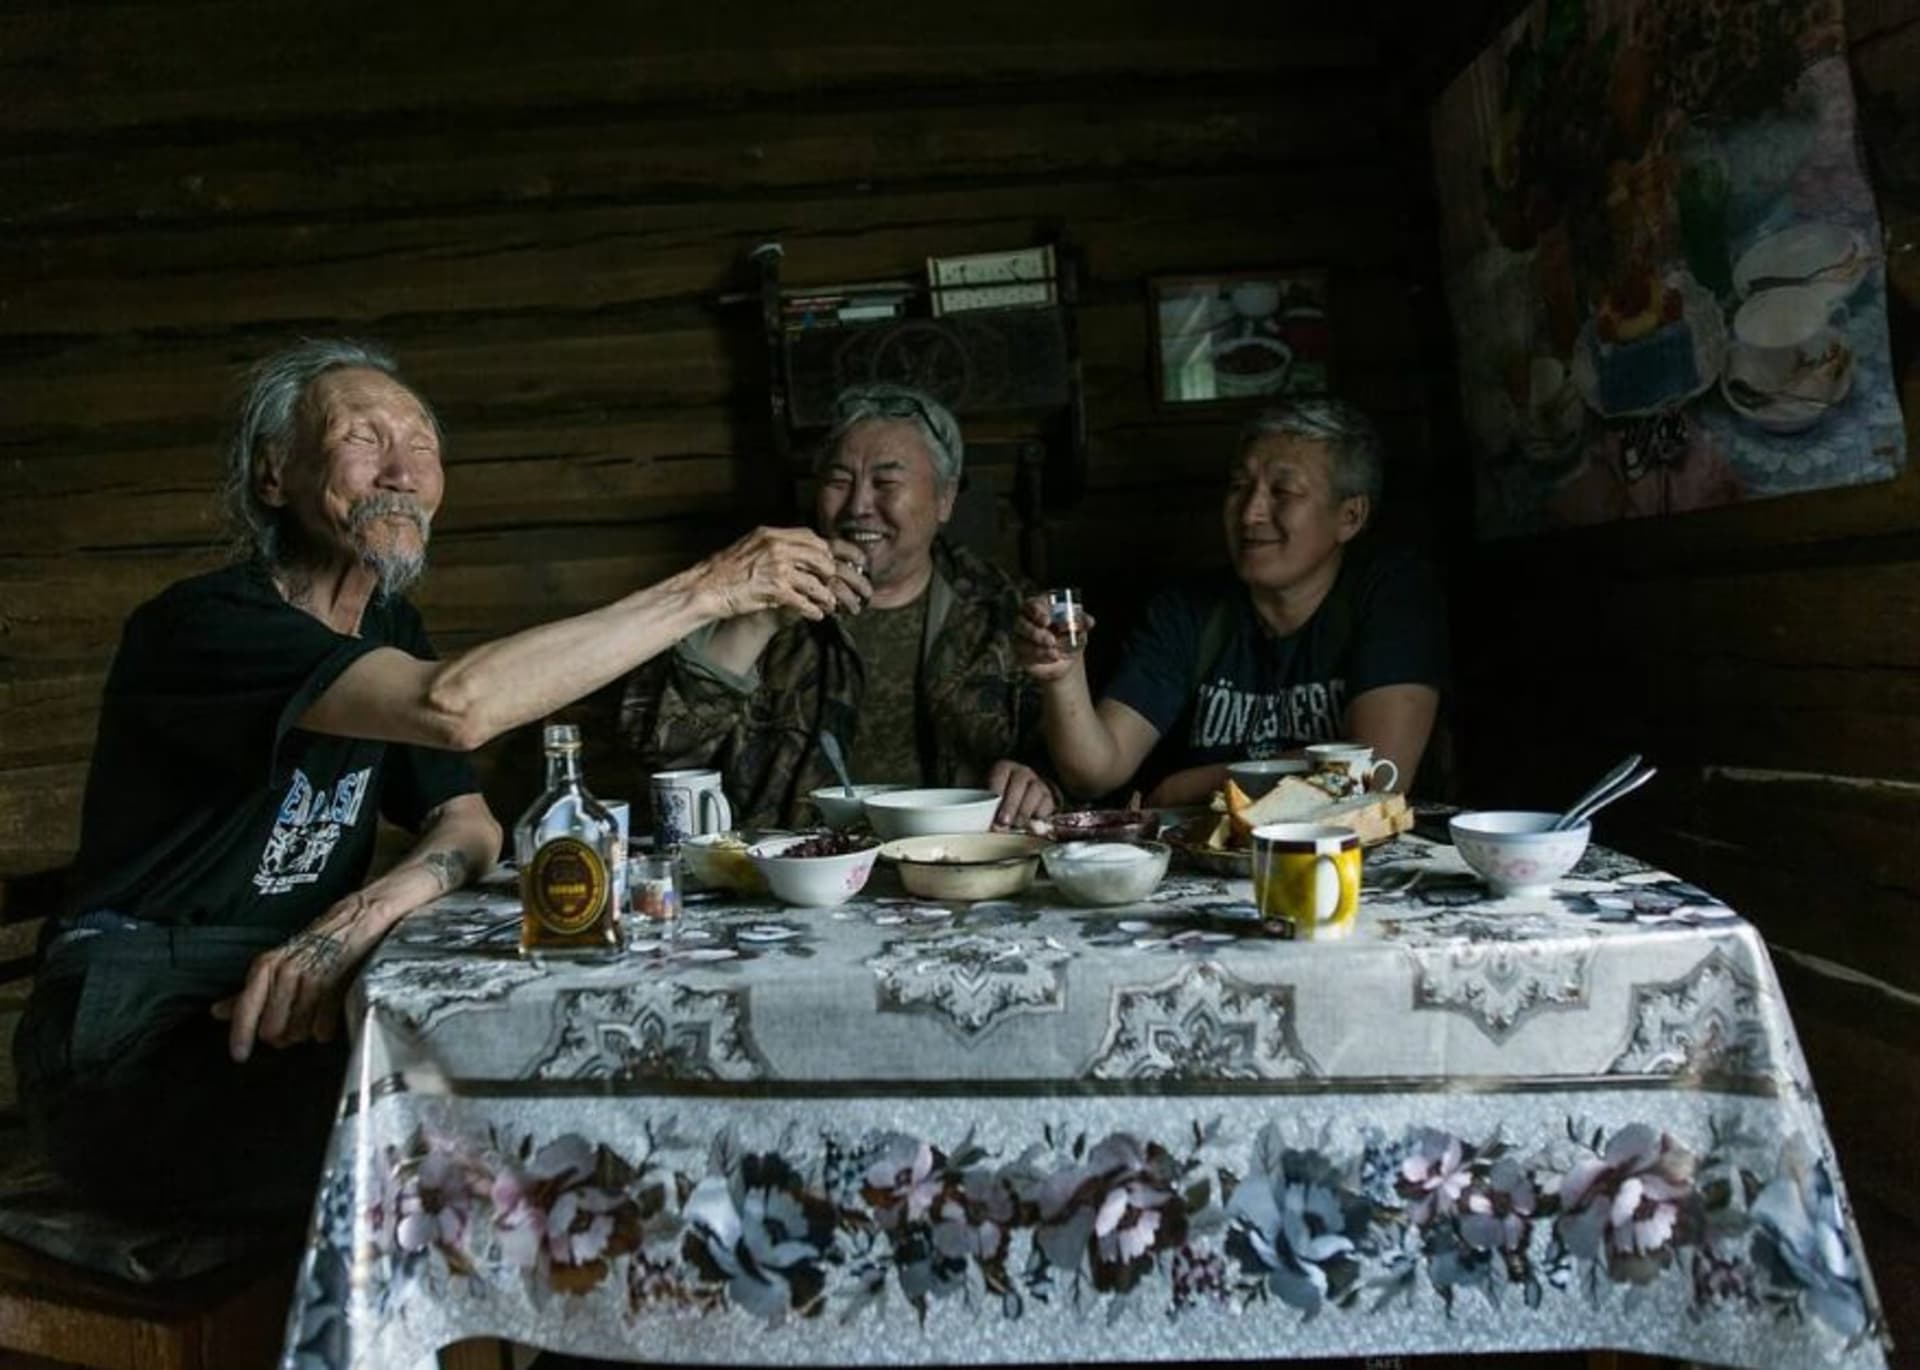 Herec Štěpán Petrov (vlevo) popíjí se scenáristou Semjonem Ermolajevem a filmařem Eduardem Novikovem. Společně natočili snímek Pan orel